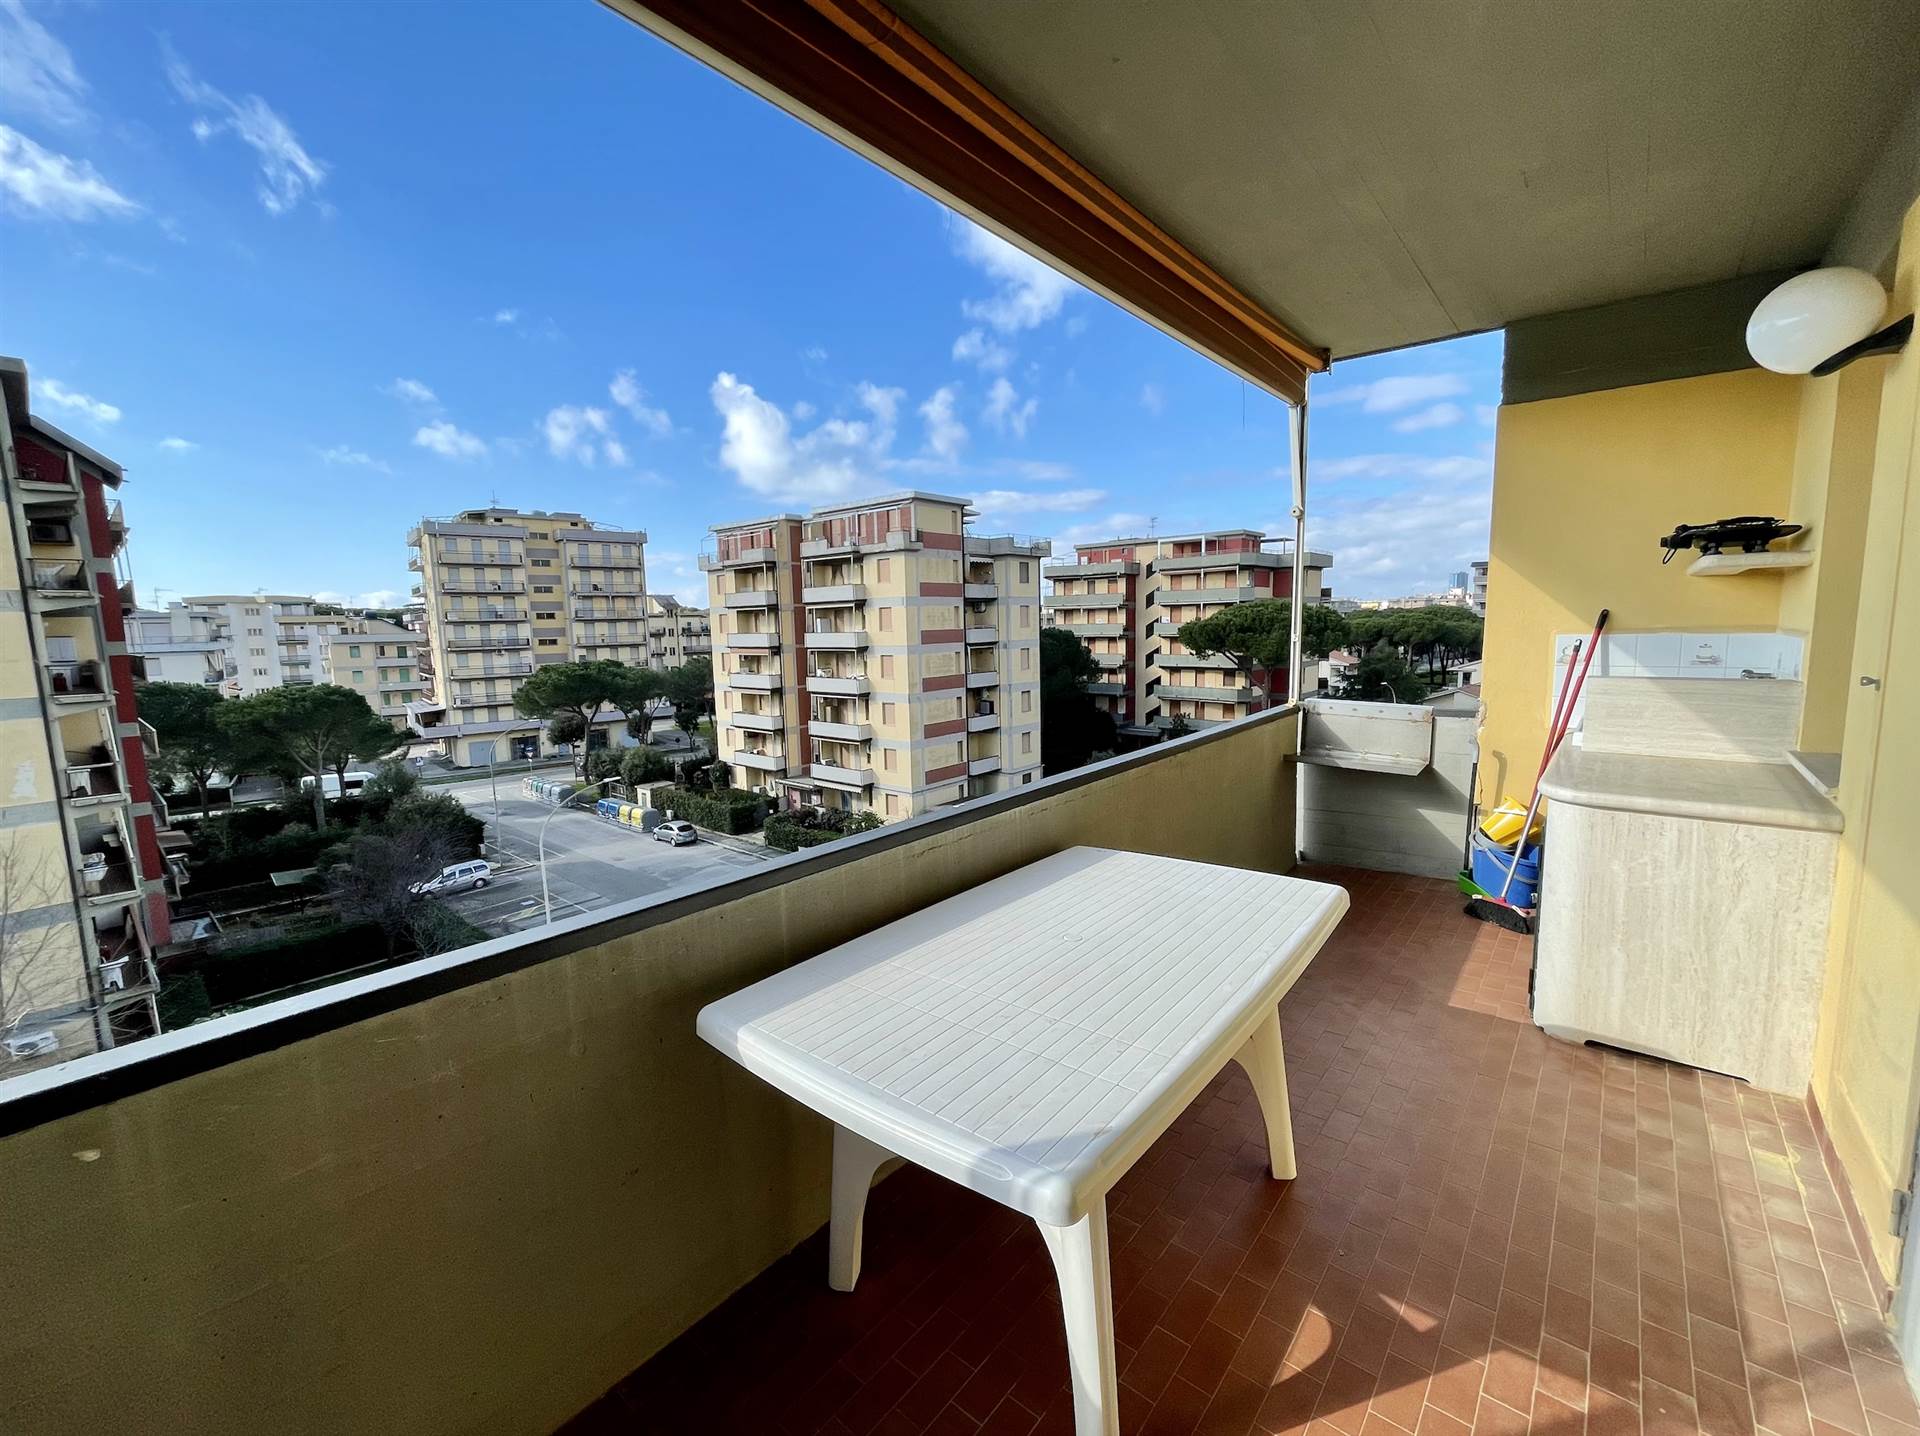 Appartamento in vendita a Follonica, 3 locali, prezzo € 210.000 | PortaleAgenzieImmobiliari.it